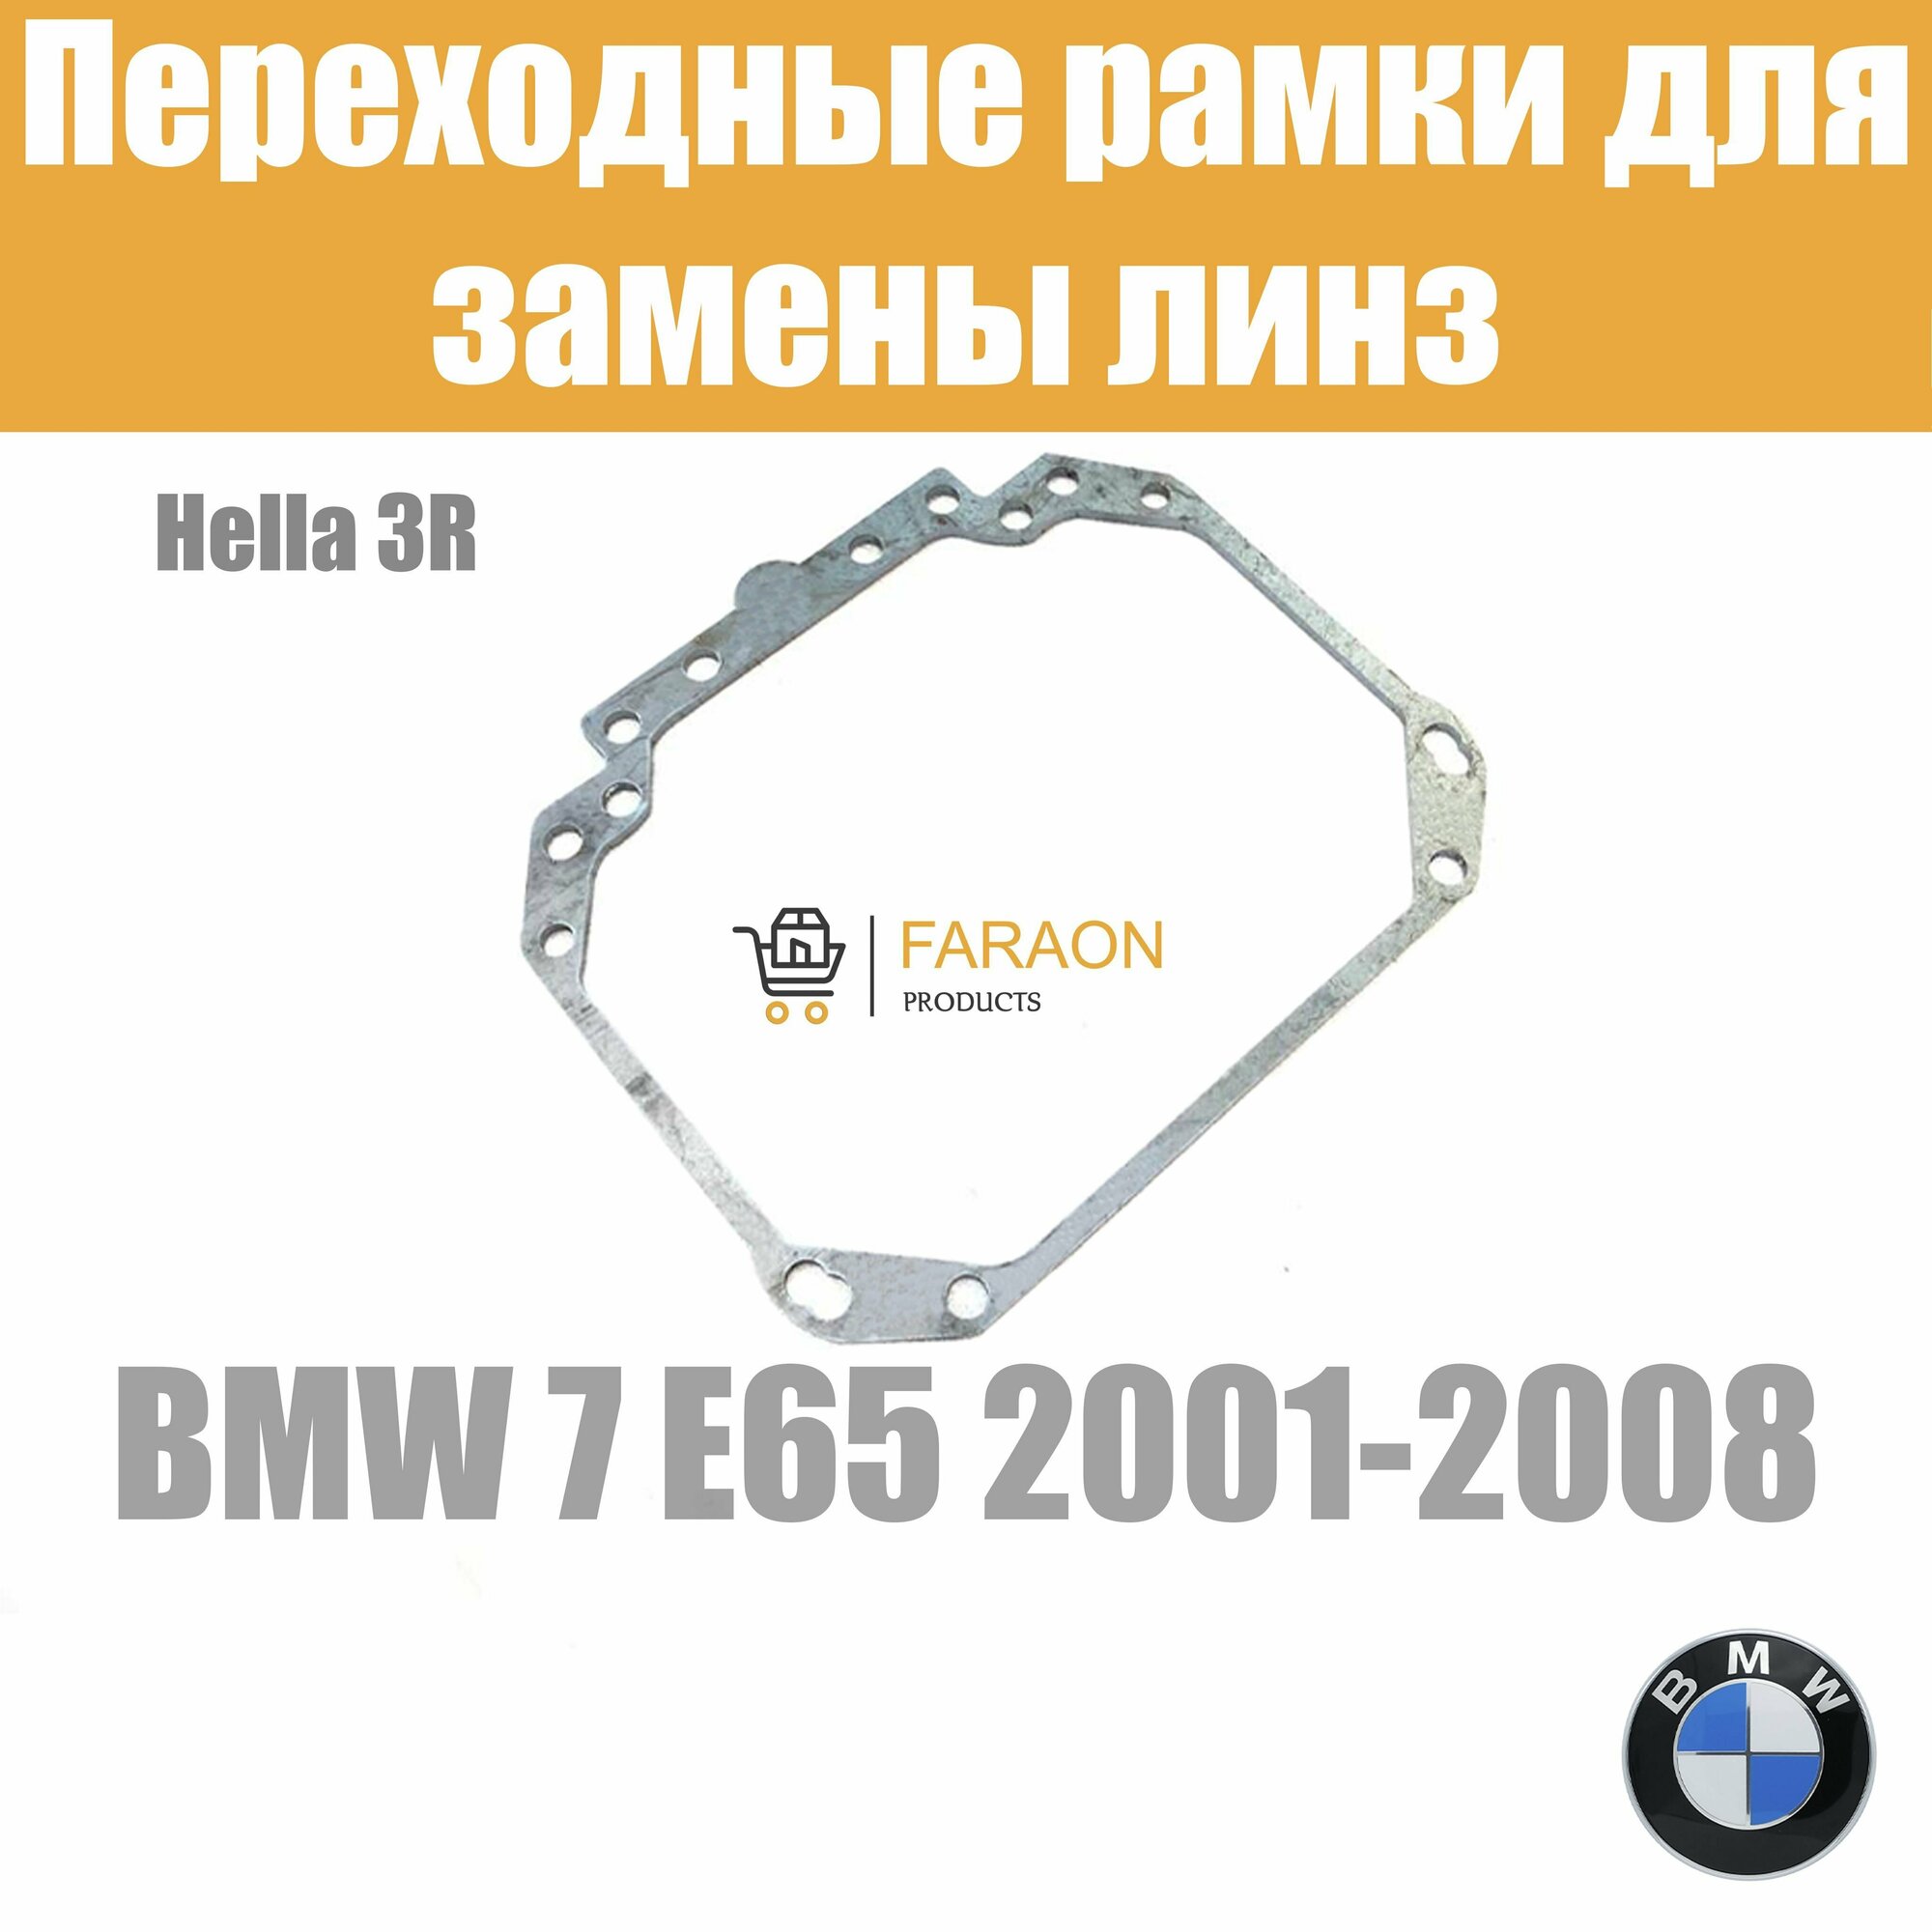 Переходные рамки для замены линз на BMW 7 E65 2001-2008 Крепление Hella 3R